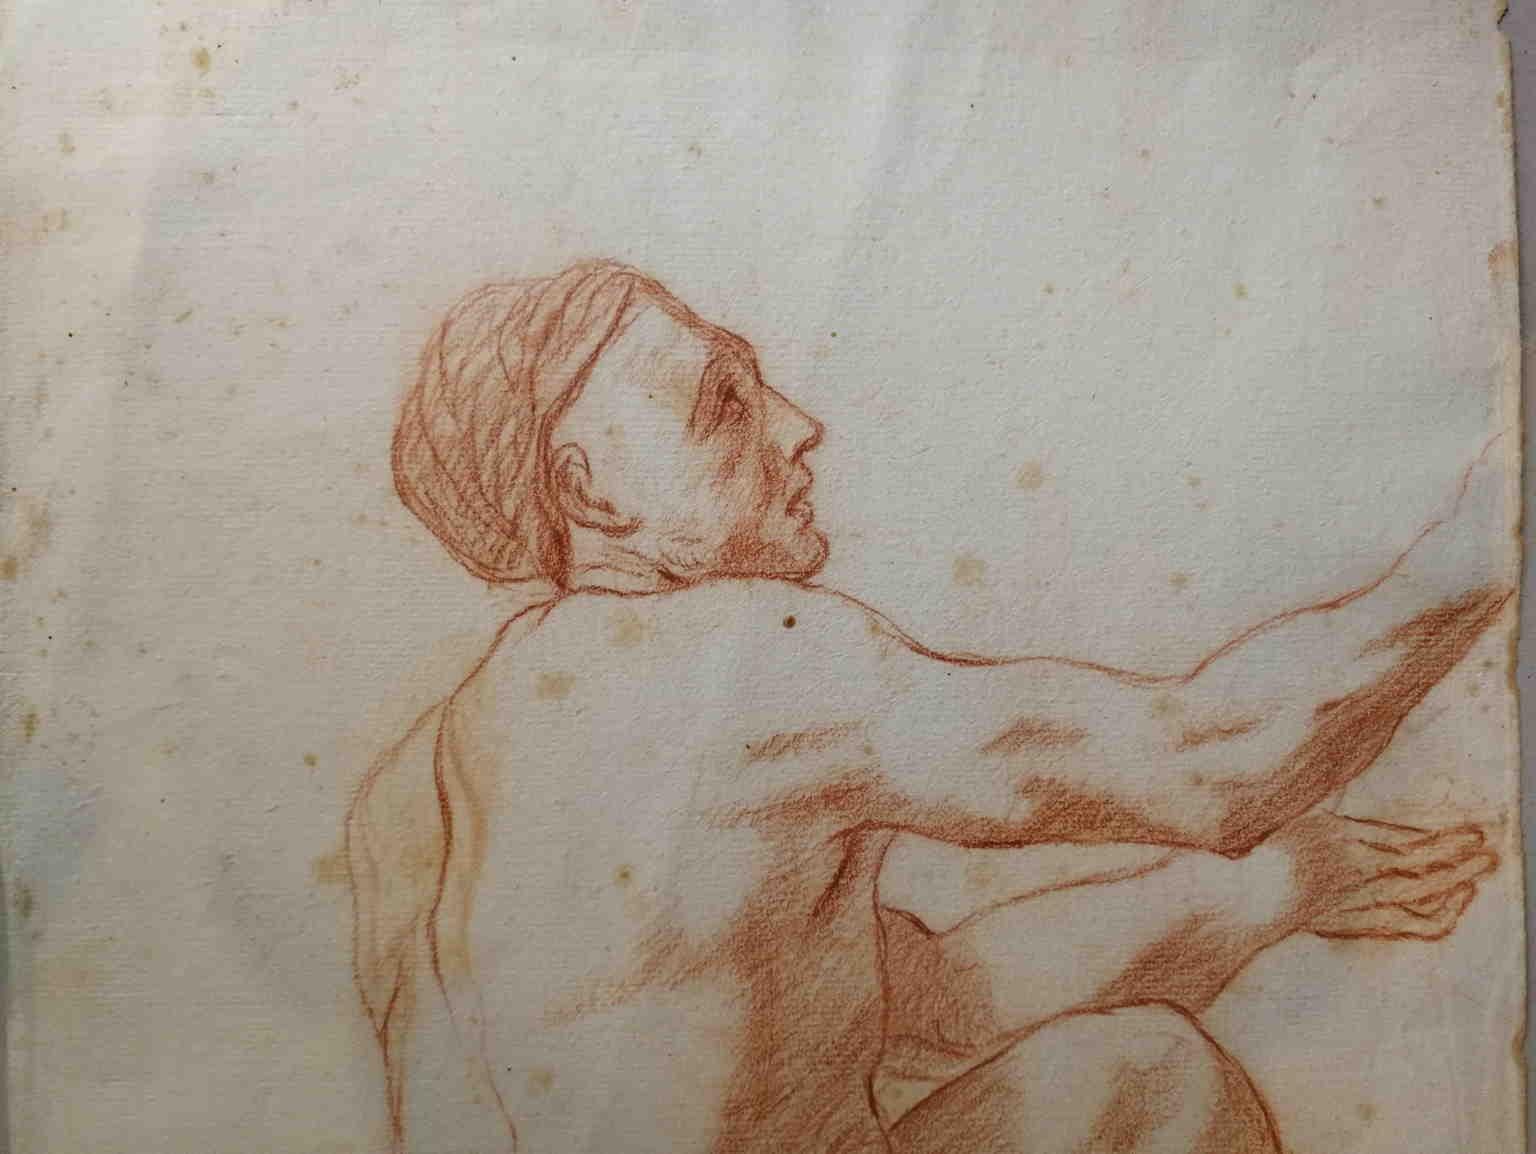 Ce dessin, sanguin sur papier, représente un homme, représenté de dos, le bras levé dans un geste de supplication ou de revendication. 

D'après la provenance et les similitudes avec la feuille et le filigrane, nous pouvons vraisemblablement